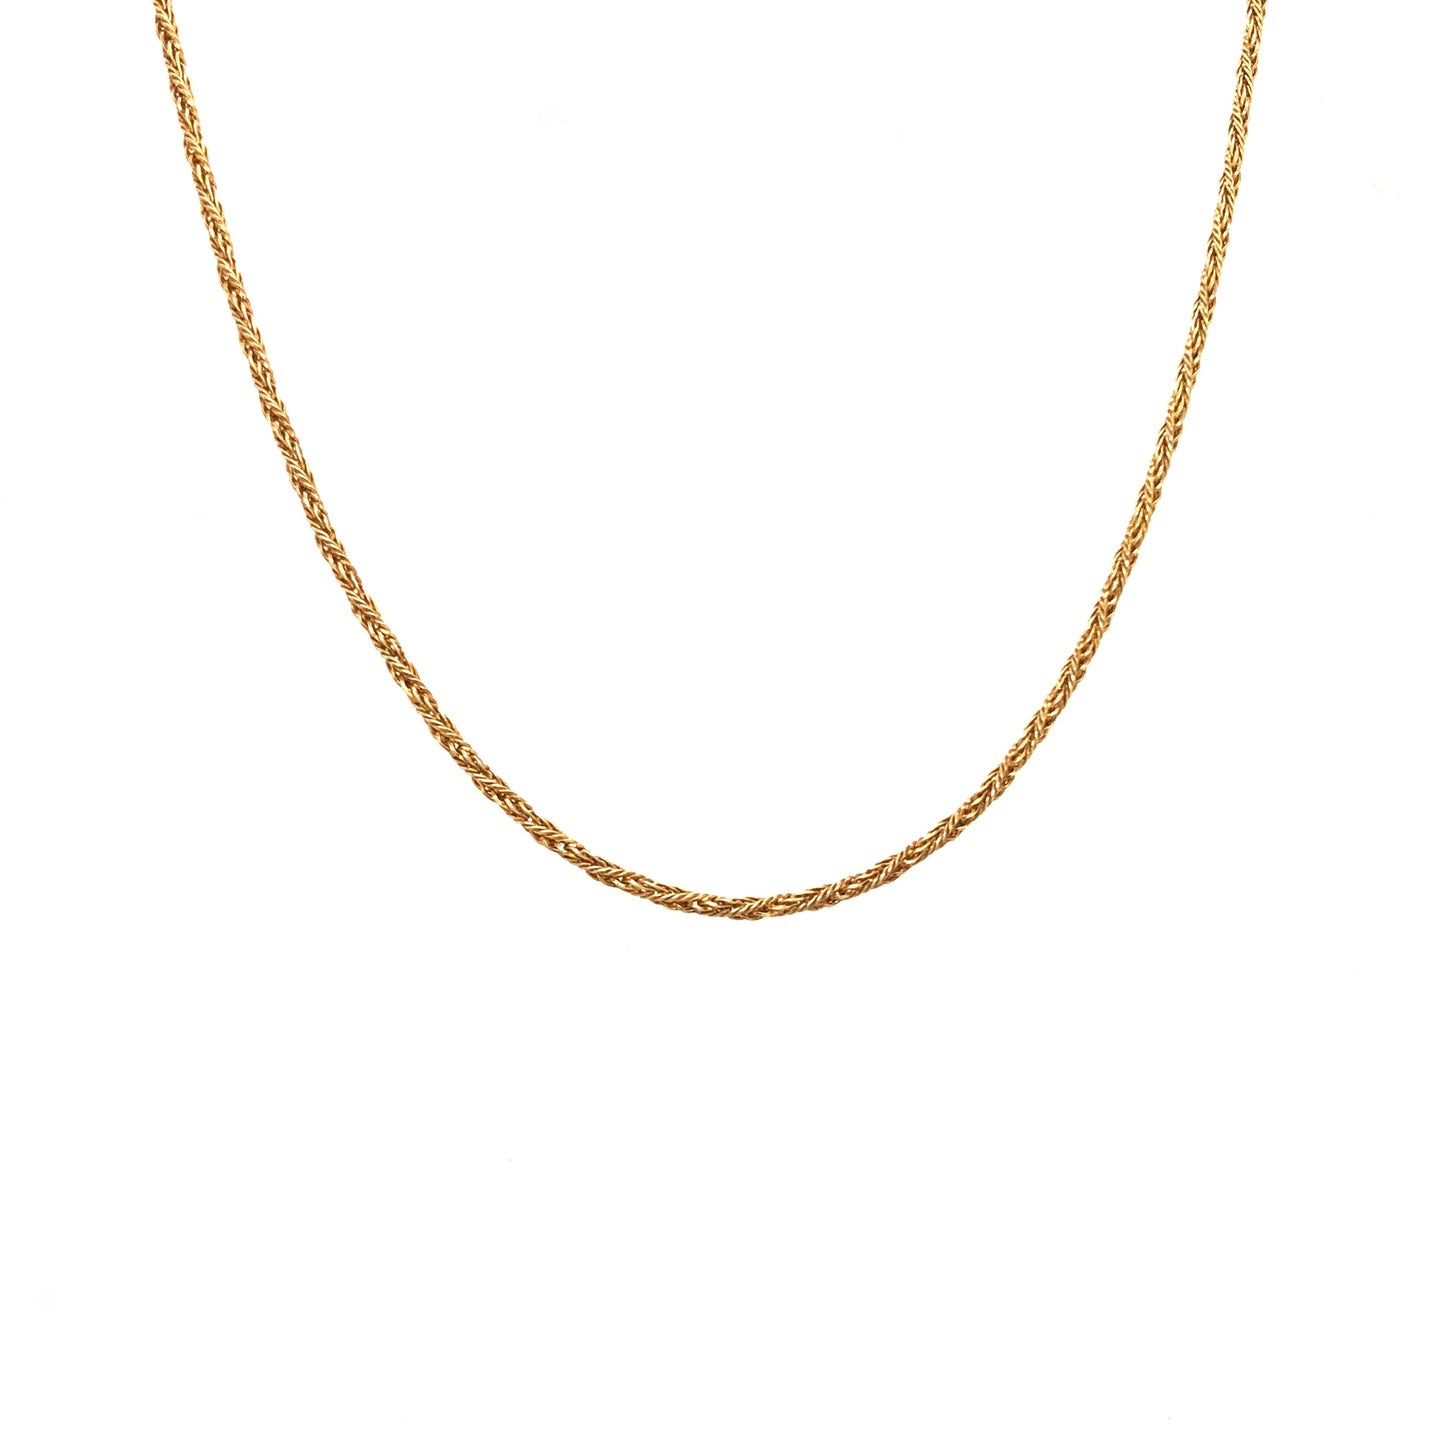 Halskette Gold 585 / 14k , gedreht